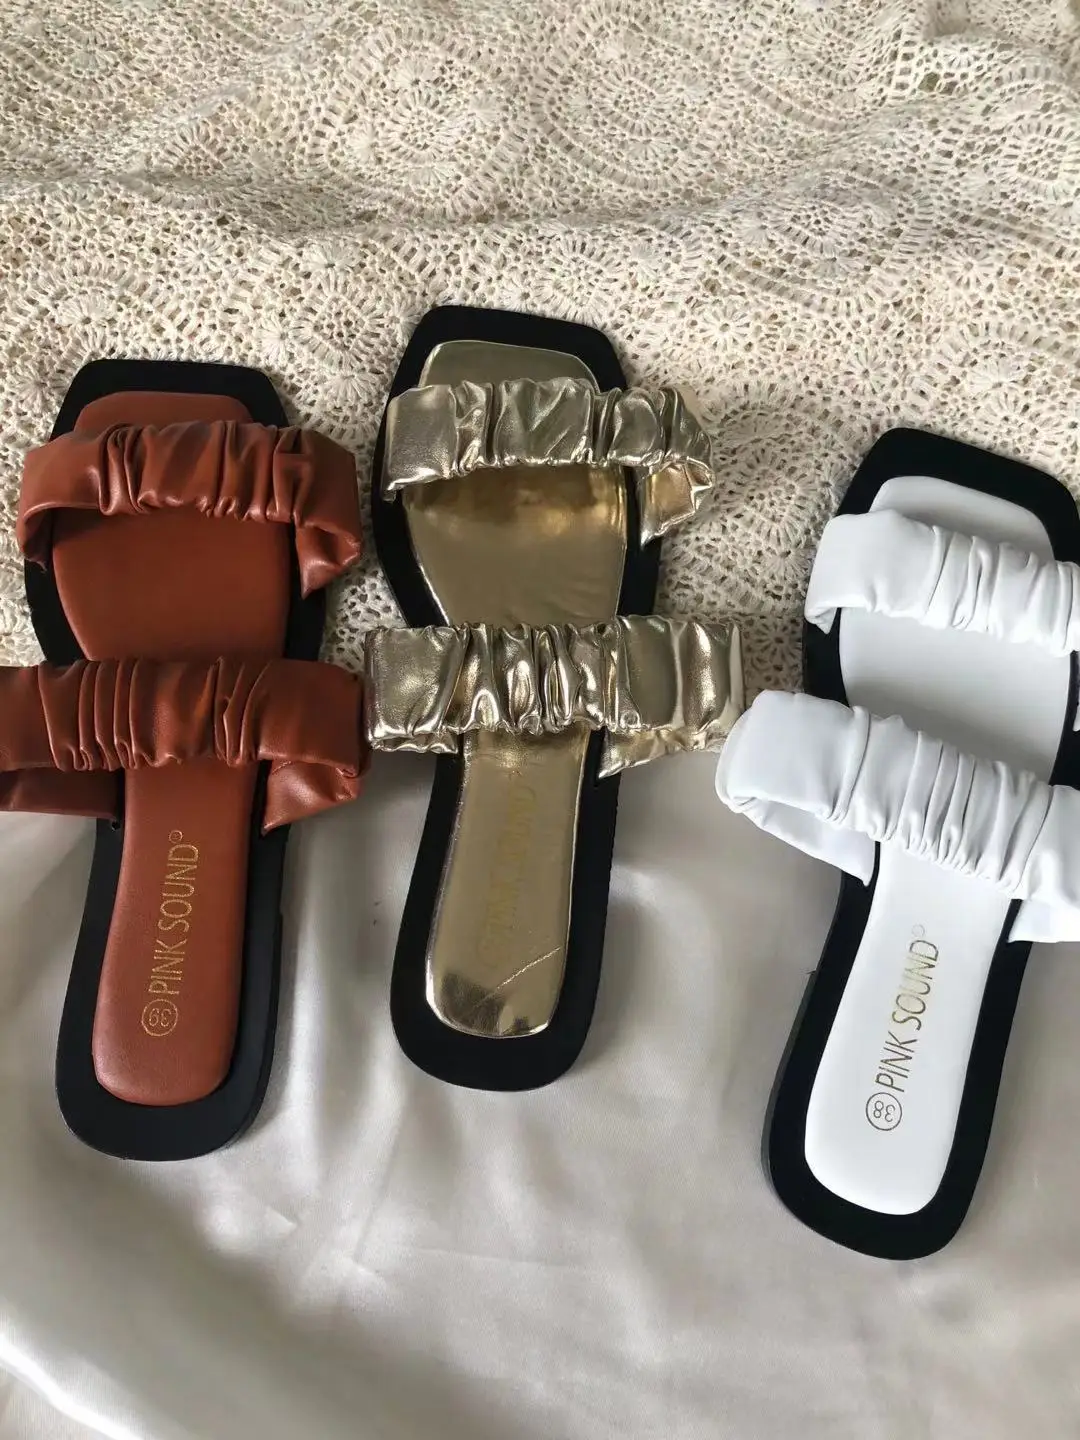 Yeezy-zapatillas De Pvc De Lujo Para Mujer,Sandalias Y Zapatillas Baratas Exteriores - Zapatillas De Mujer Aire Libre,Sandalias Y Zapatillas,Mujer De Zapatillas Product on Alibaba.com